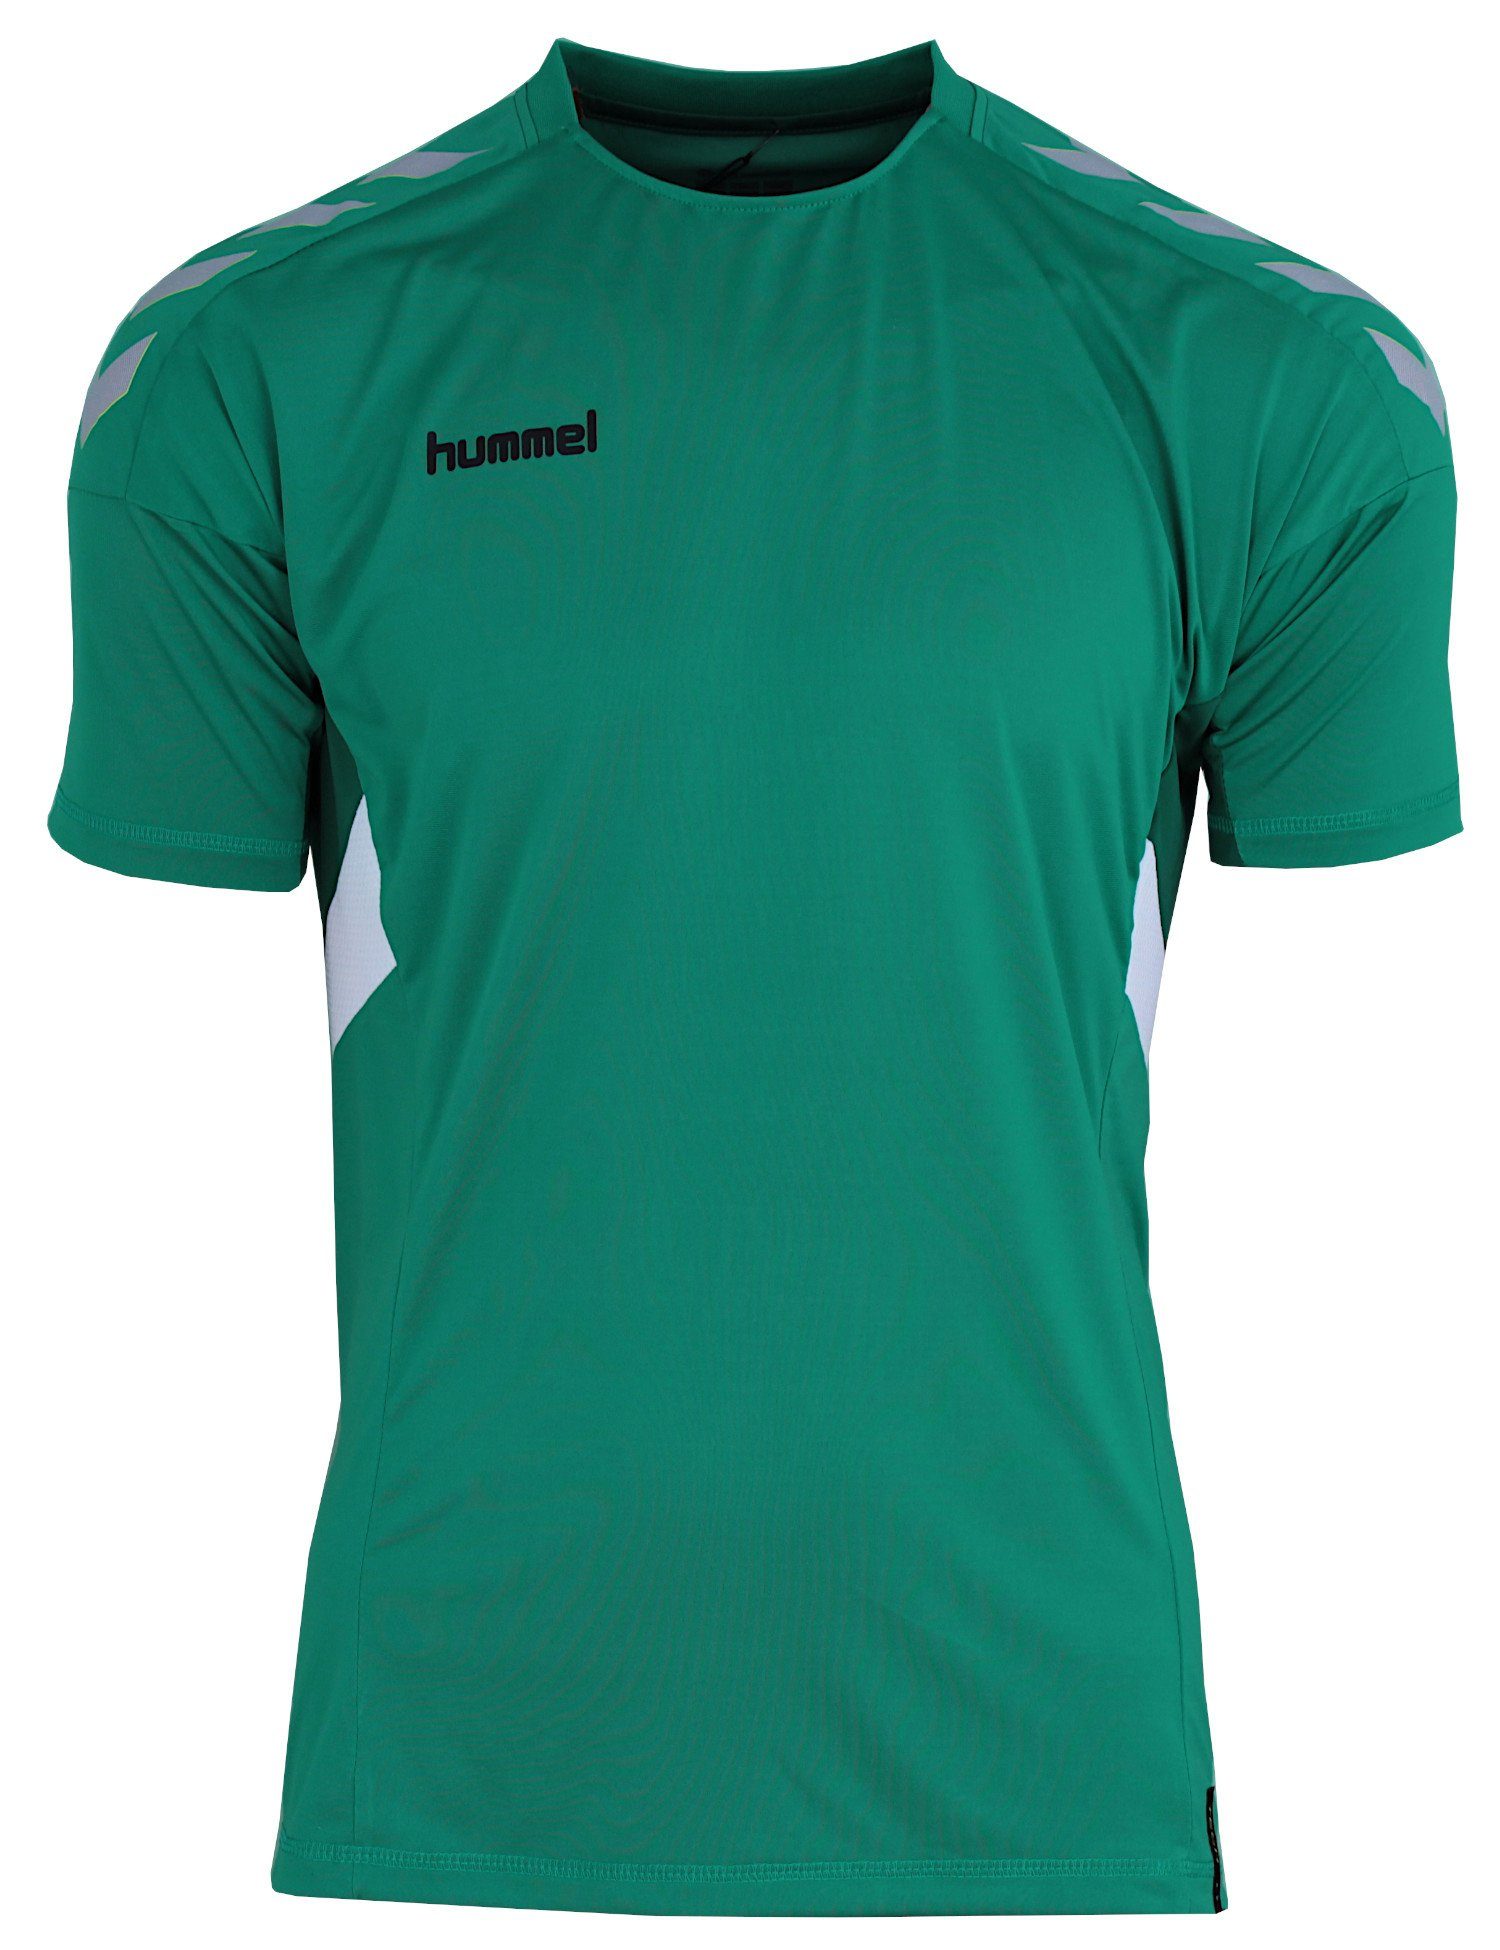 hummel Trainingsshirt Move Tech Trikot Shirt Optimale Atmungsaktivität, schnelltrocknend Grün (Sports Green)